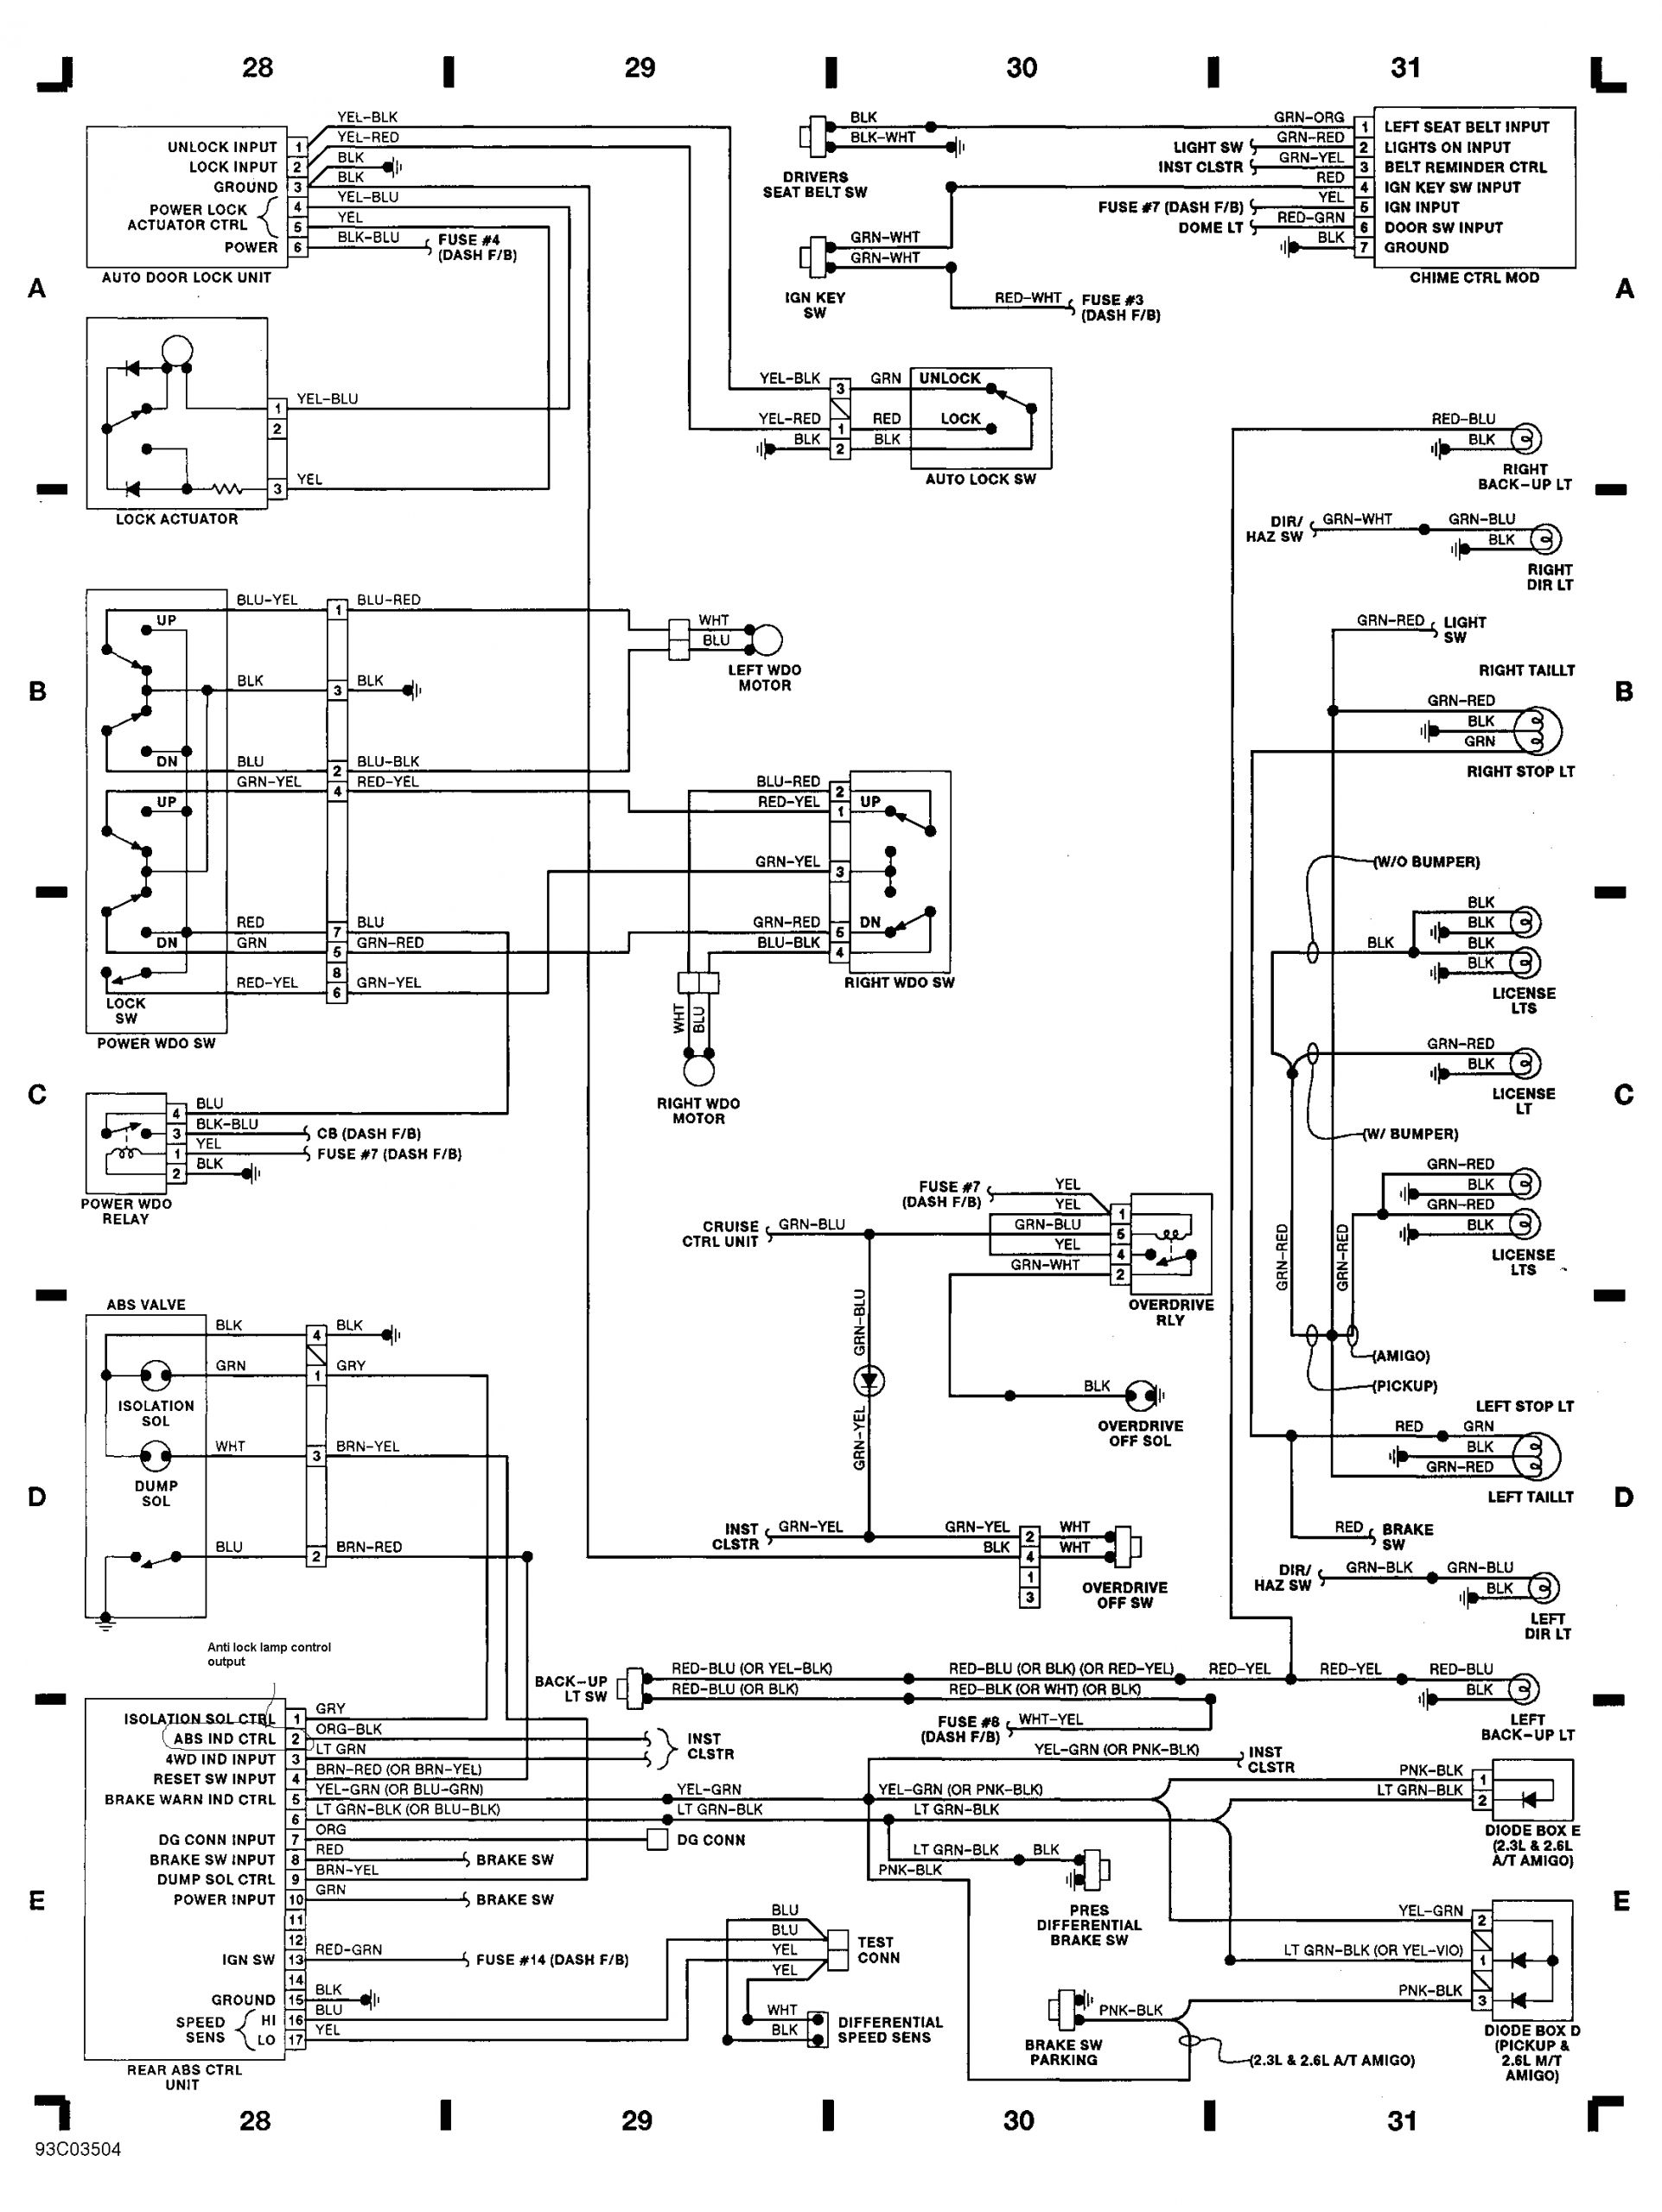 2001 isuzu Rodeo Wiring Diagram 95 isuzu Trooper Engine Diagram Wiring Library